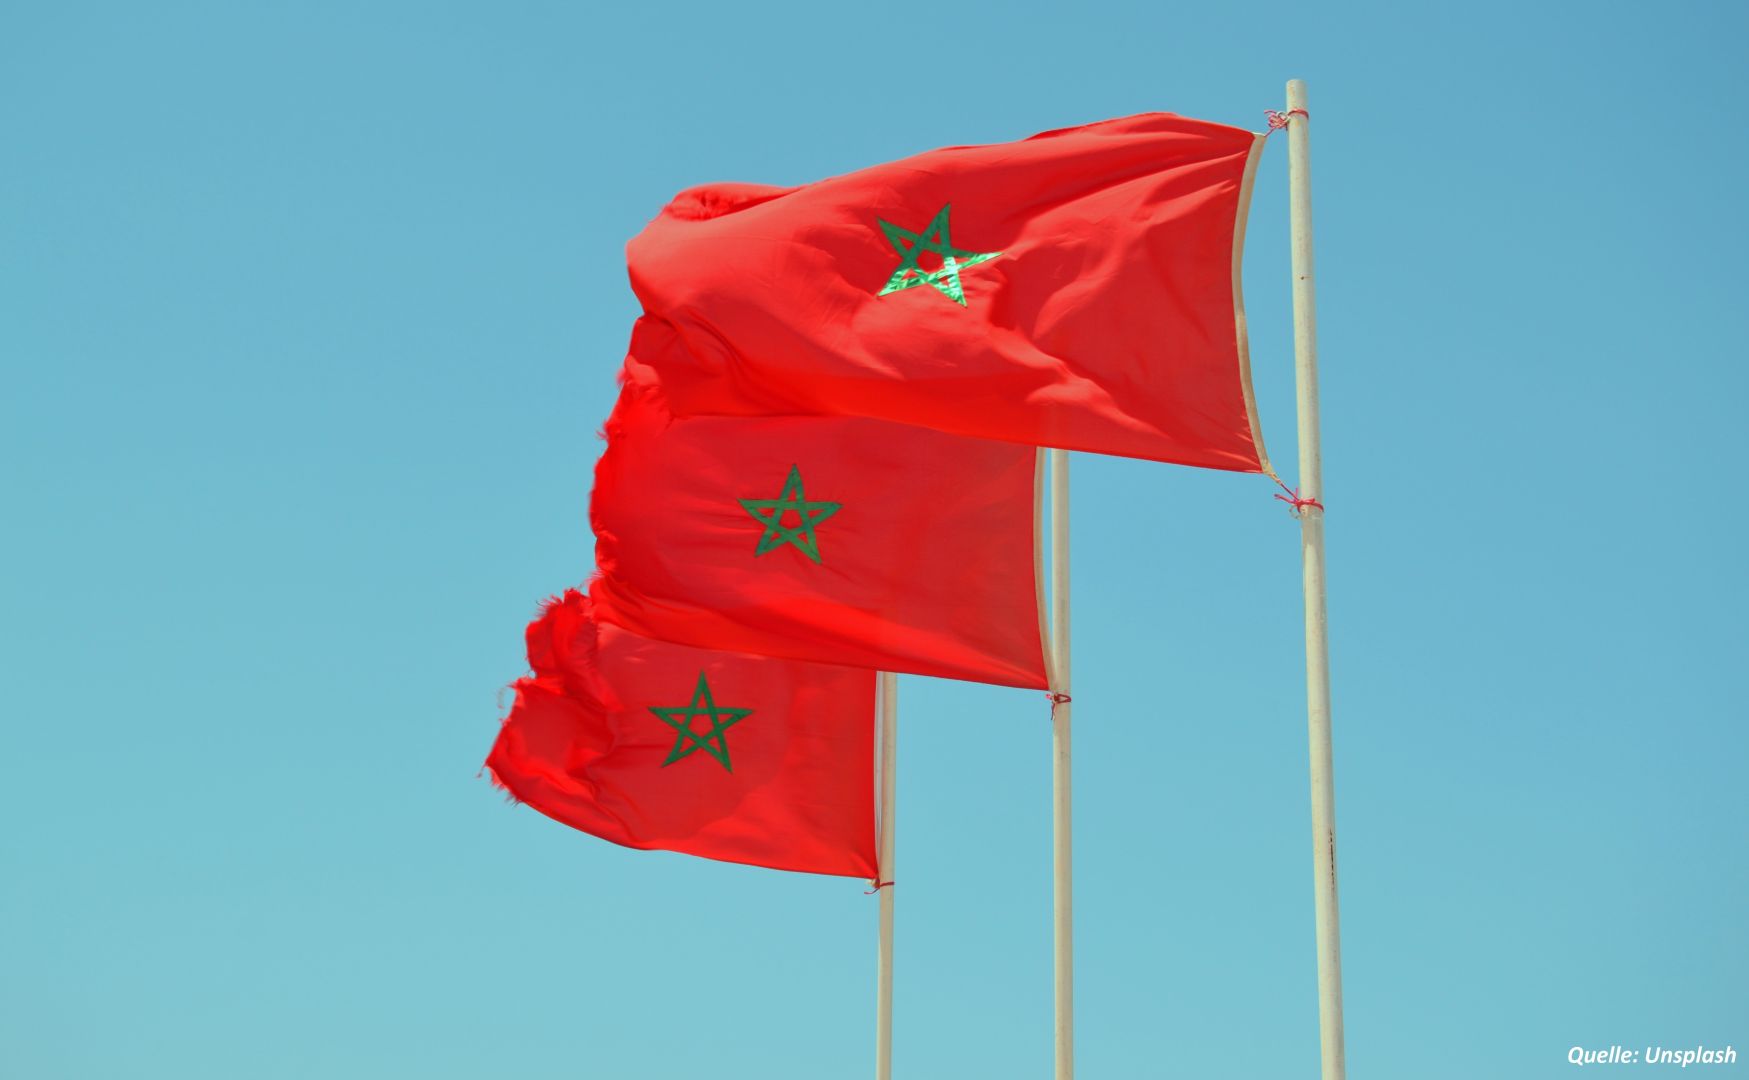 König von Marokko ernennt neuen Generalinspekteur der Armee